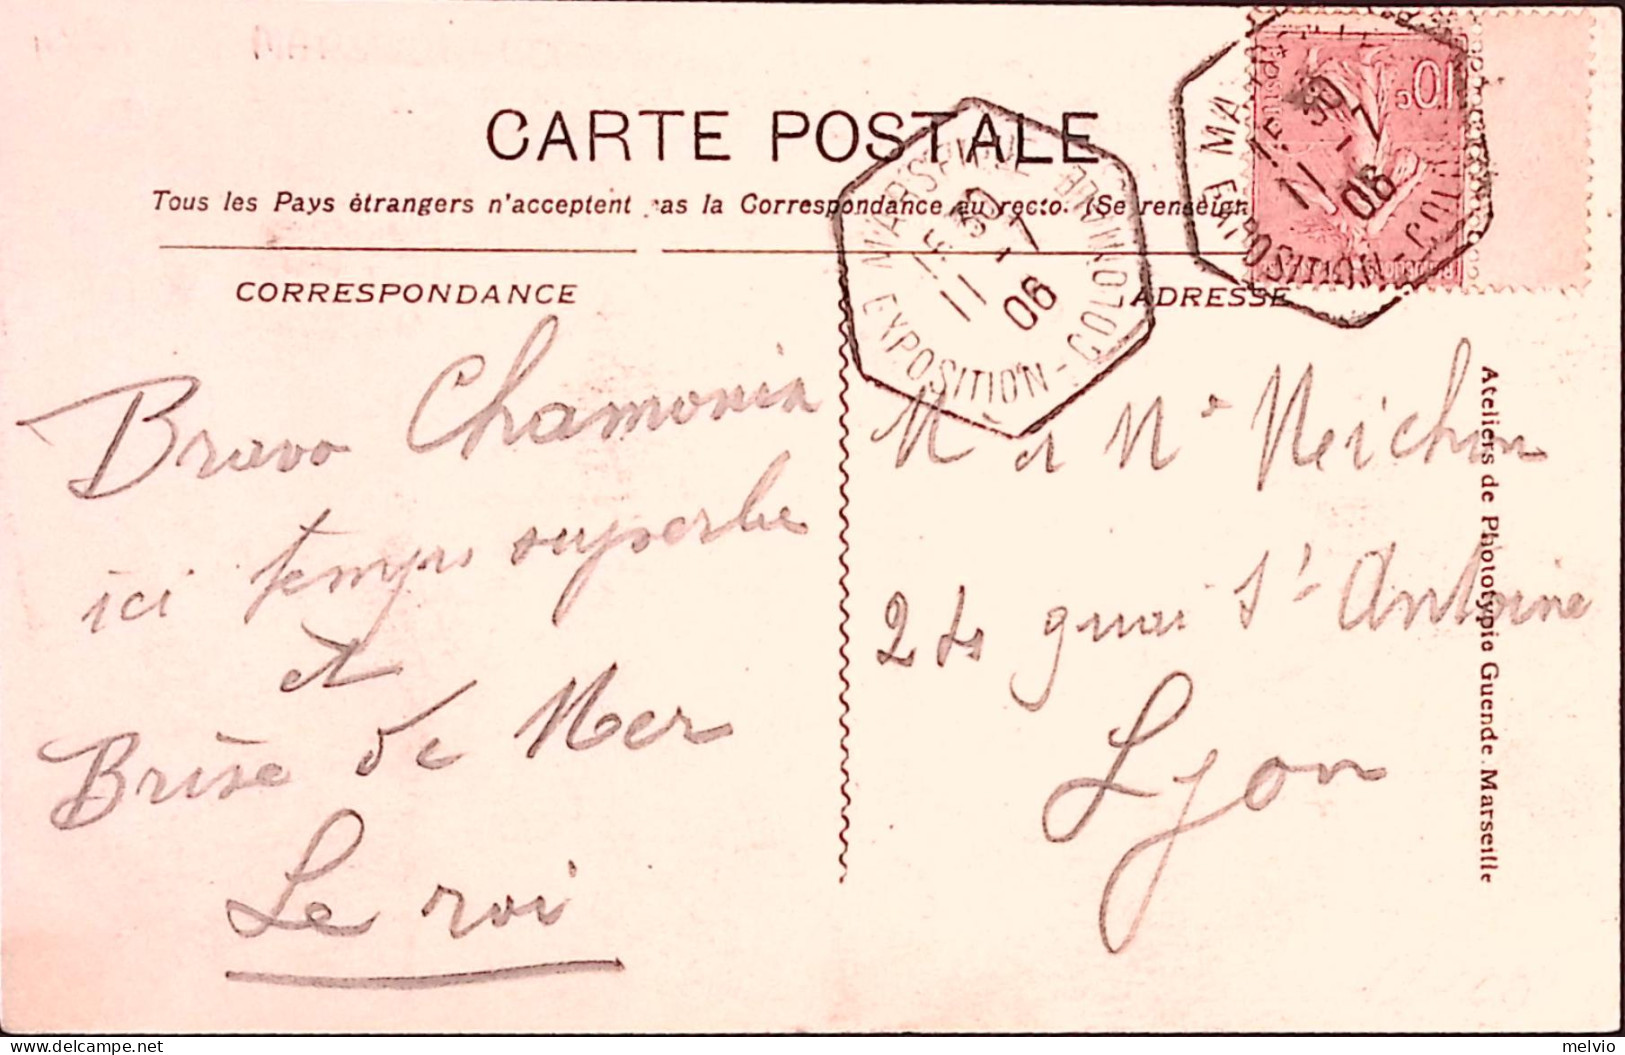 1906-Francia Esposizione Coloniali/Marsiglia (11.7) Annullo Speciale Su Cartolin - 1877-1920: Semi-Moderne